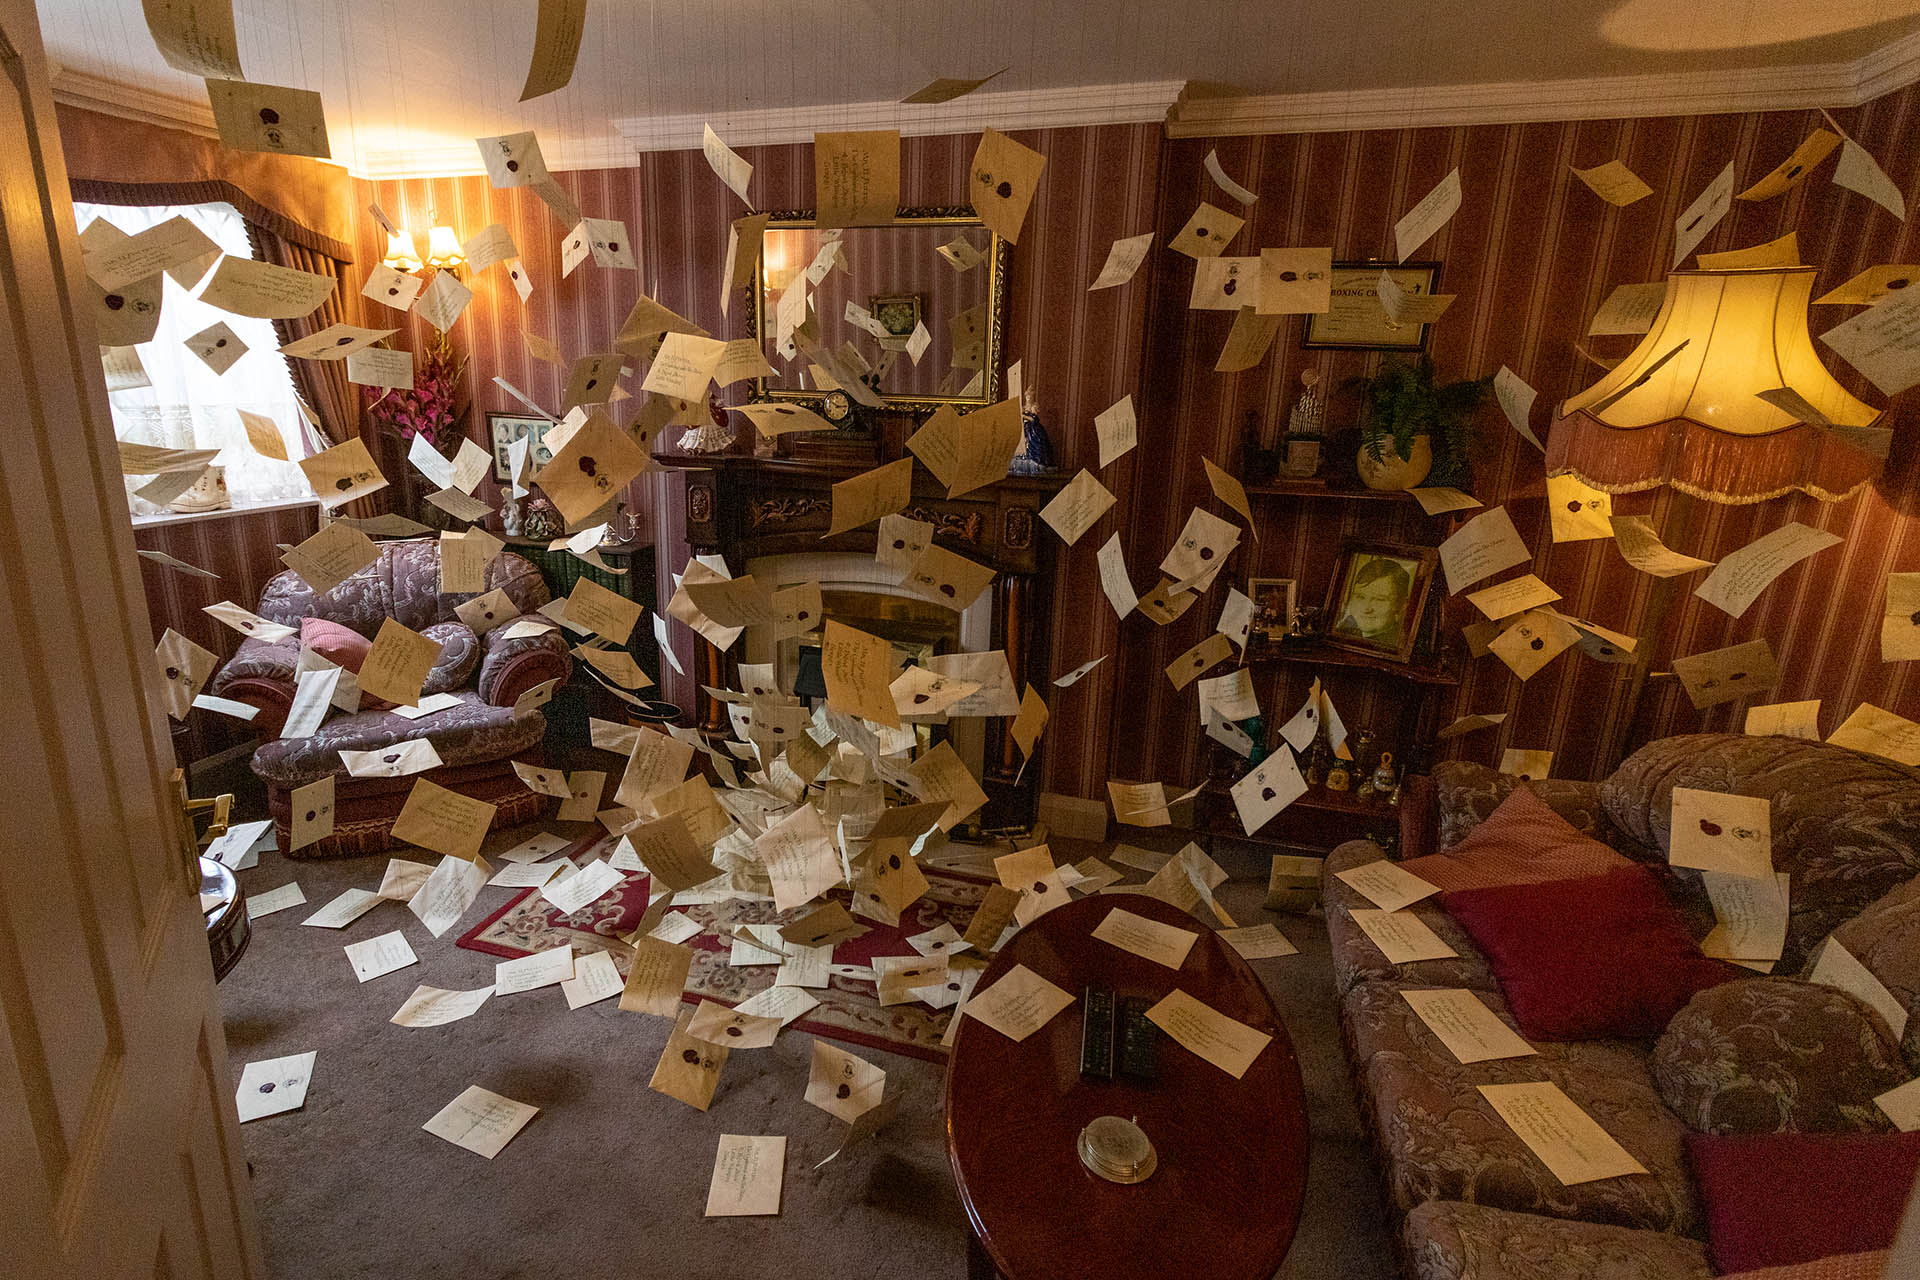 De brieven van Hogwarts die rondzweven door de kamer van de Dursleys op Privet Drive